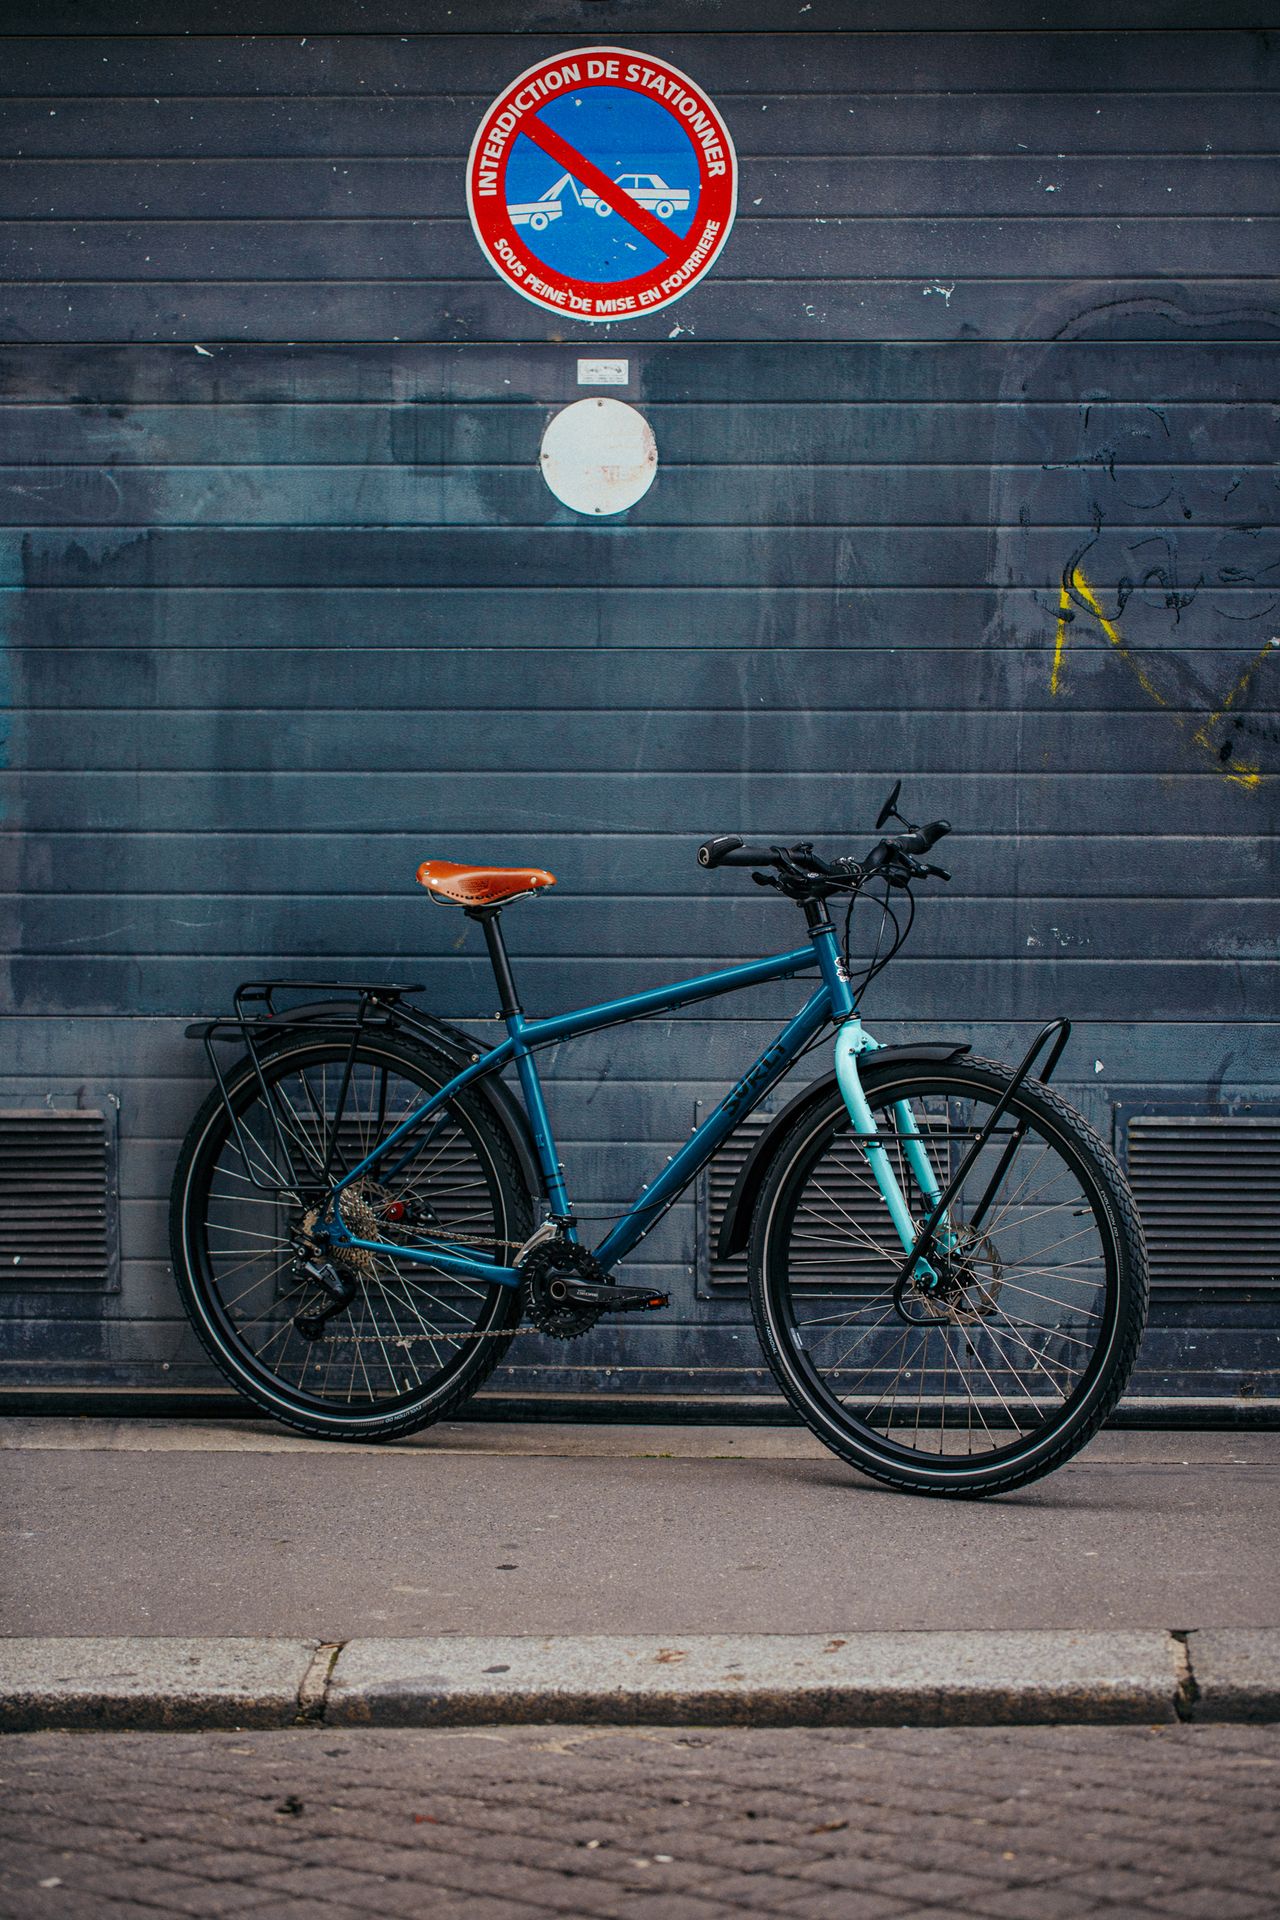 Magasin de cycles et atelier de réparation et montage vélo à la carte à Paris 13eme spécialisé dans le gravel et le voyage. cadre acier repeint à l'epoxy